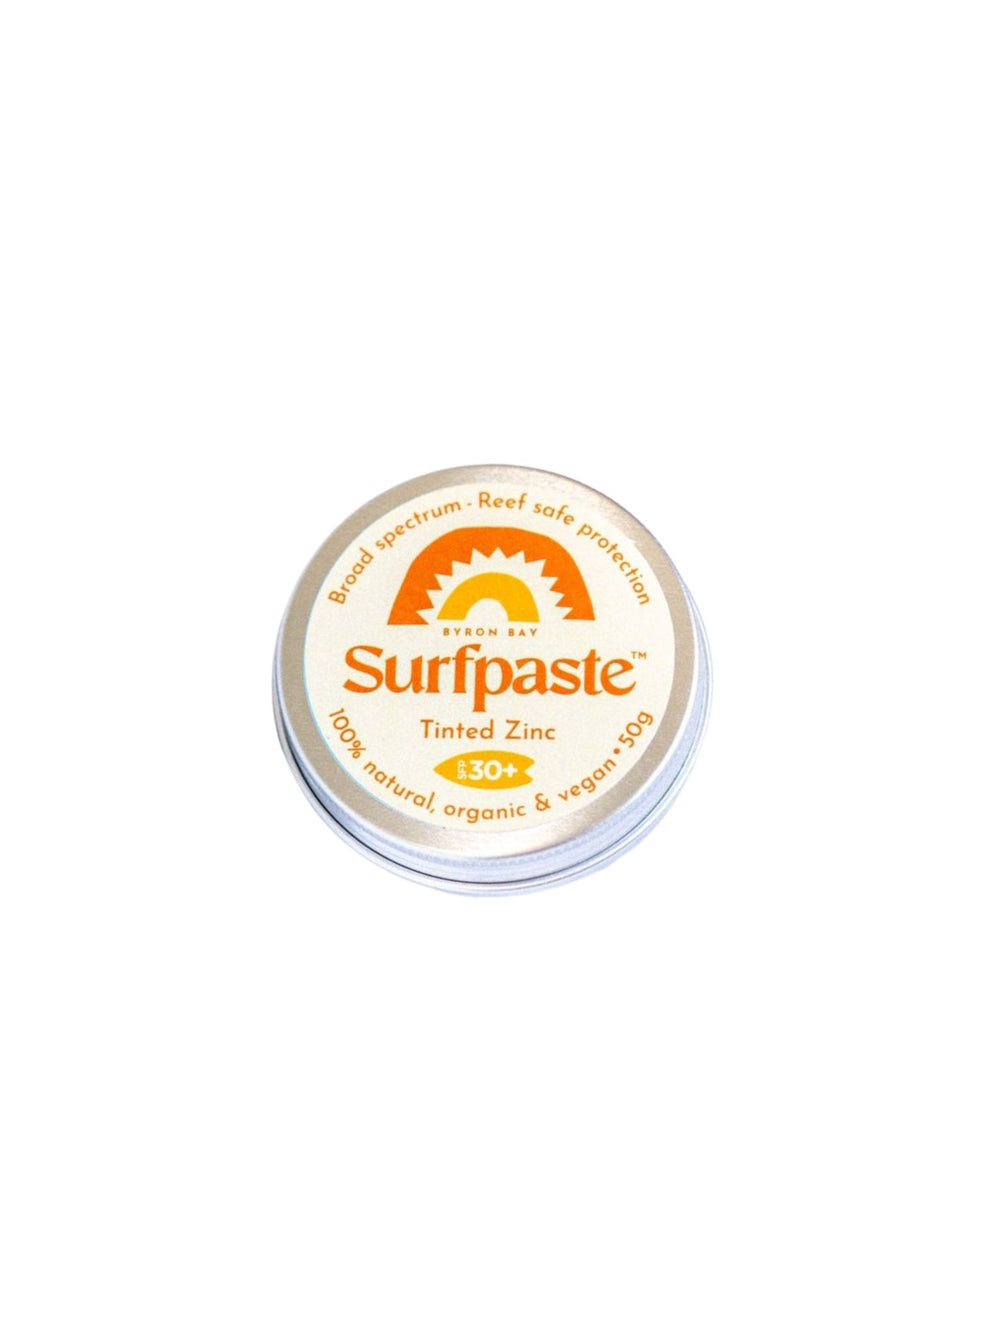 Surfpaste Tinted Zinc SPF 30+ - 50g